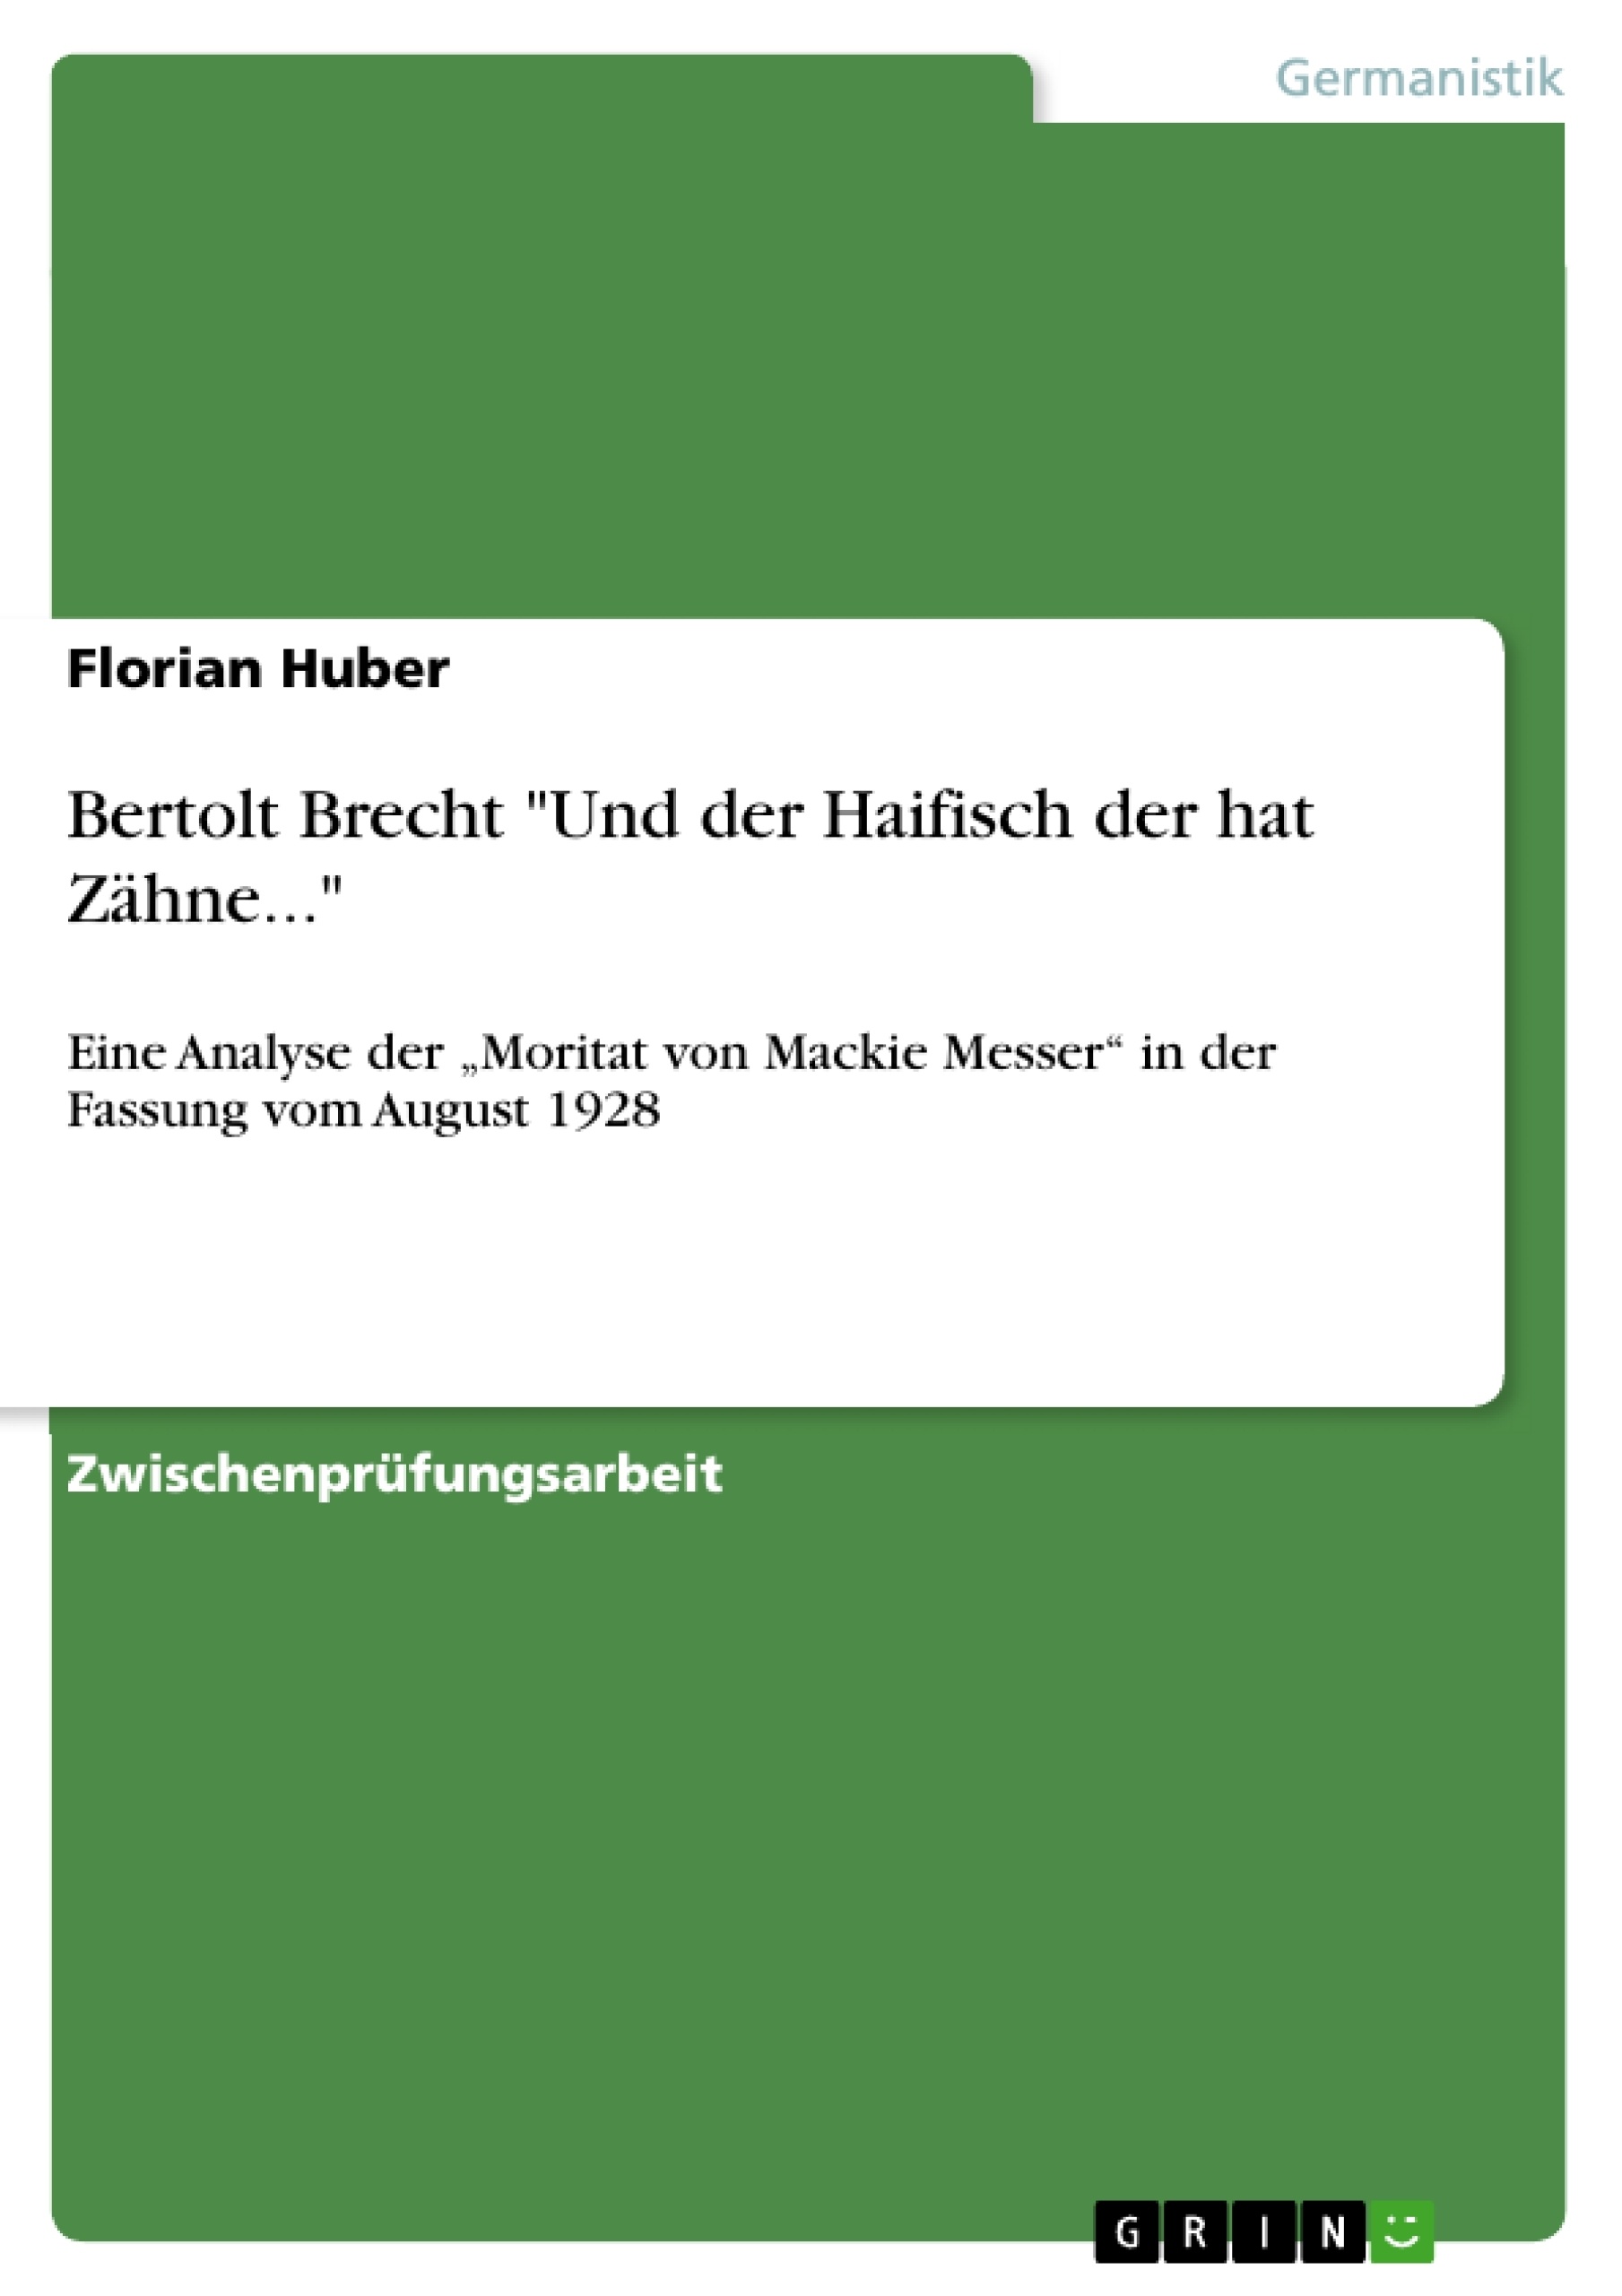 Titre: Bertolt Brecht "Und der Haifisch der hat Zähne..."